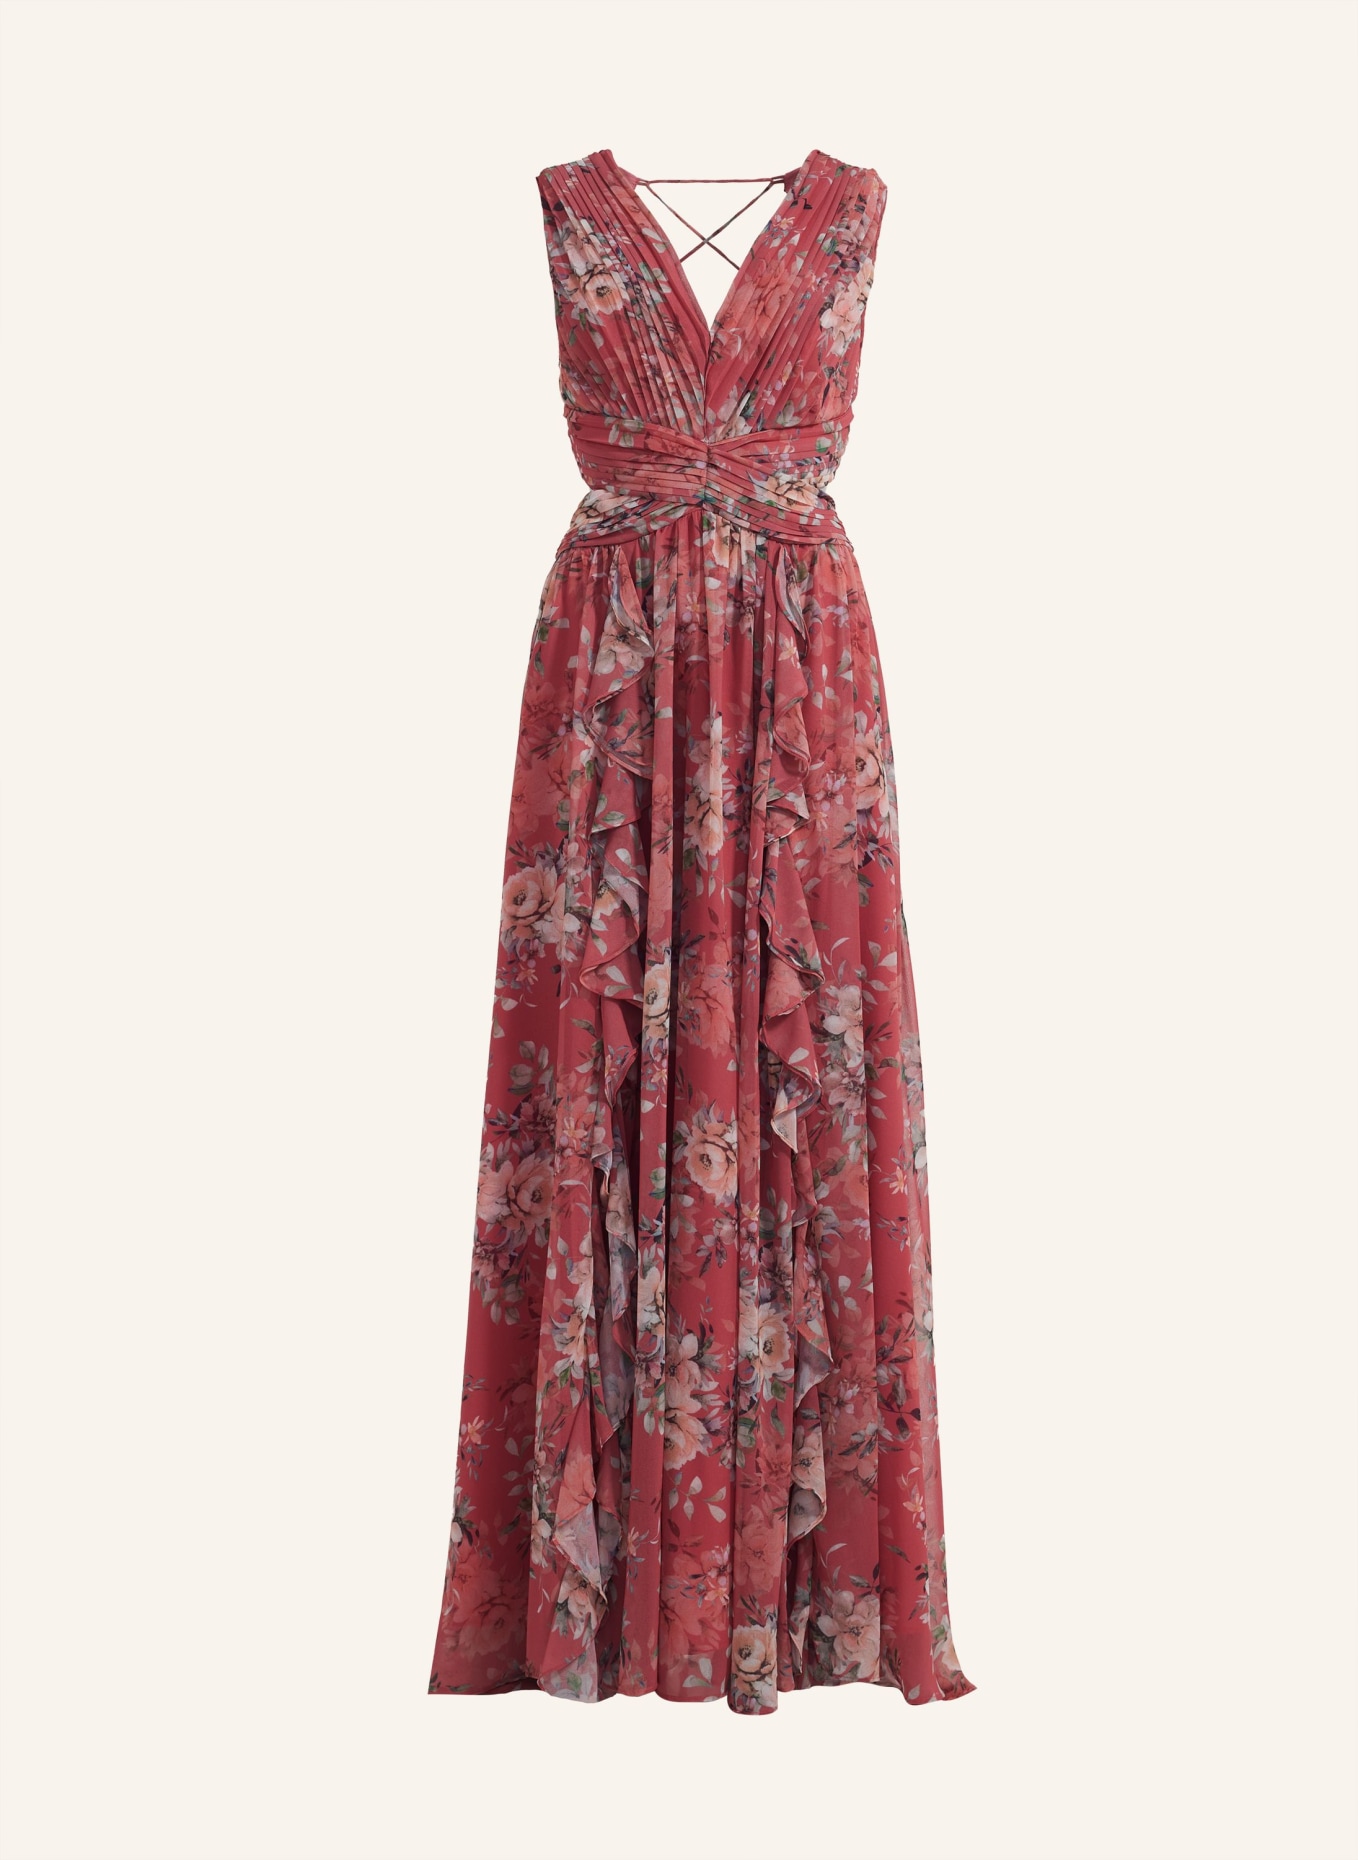 ADLYSH FAIRYTALE DRESS, Farbe: ROSÉ (Bild 1)